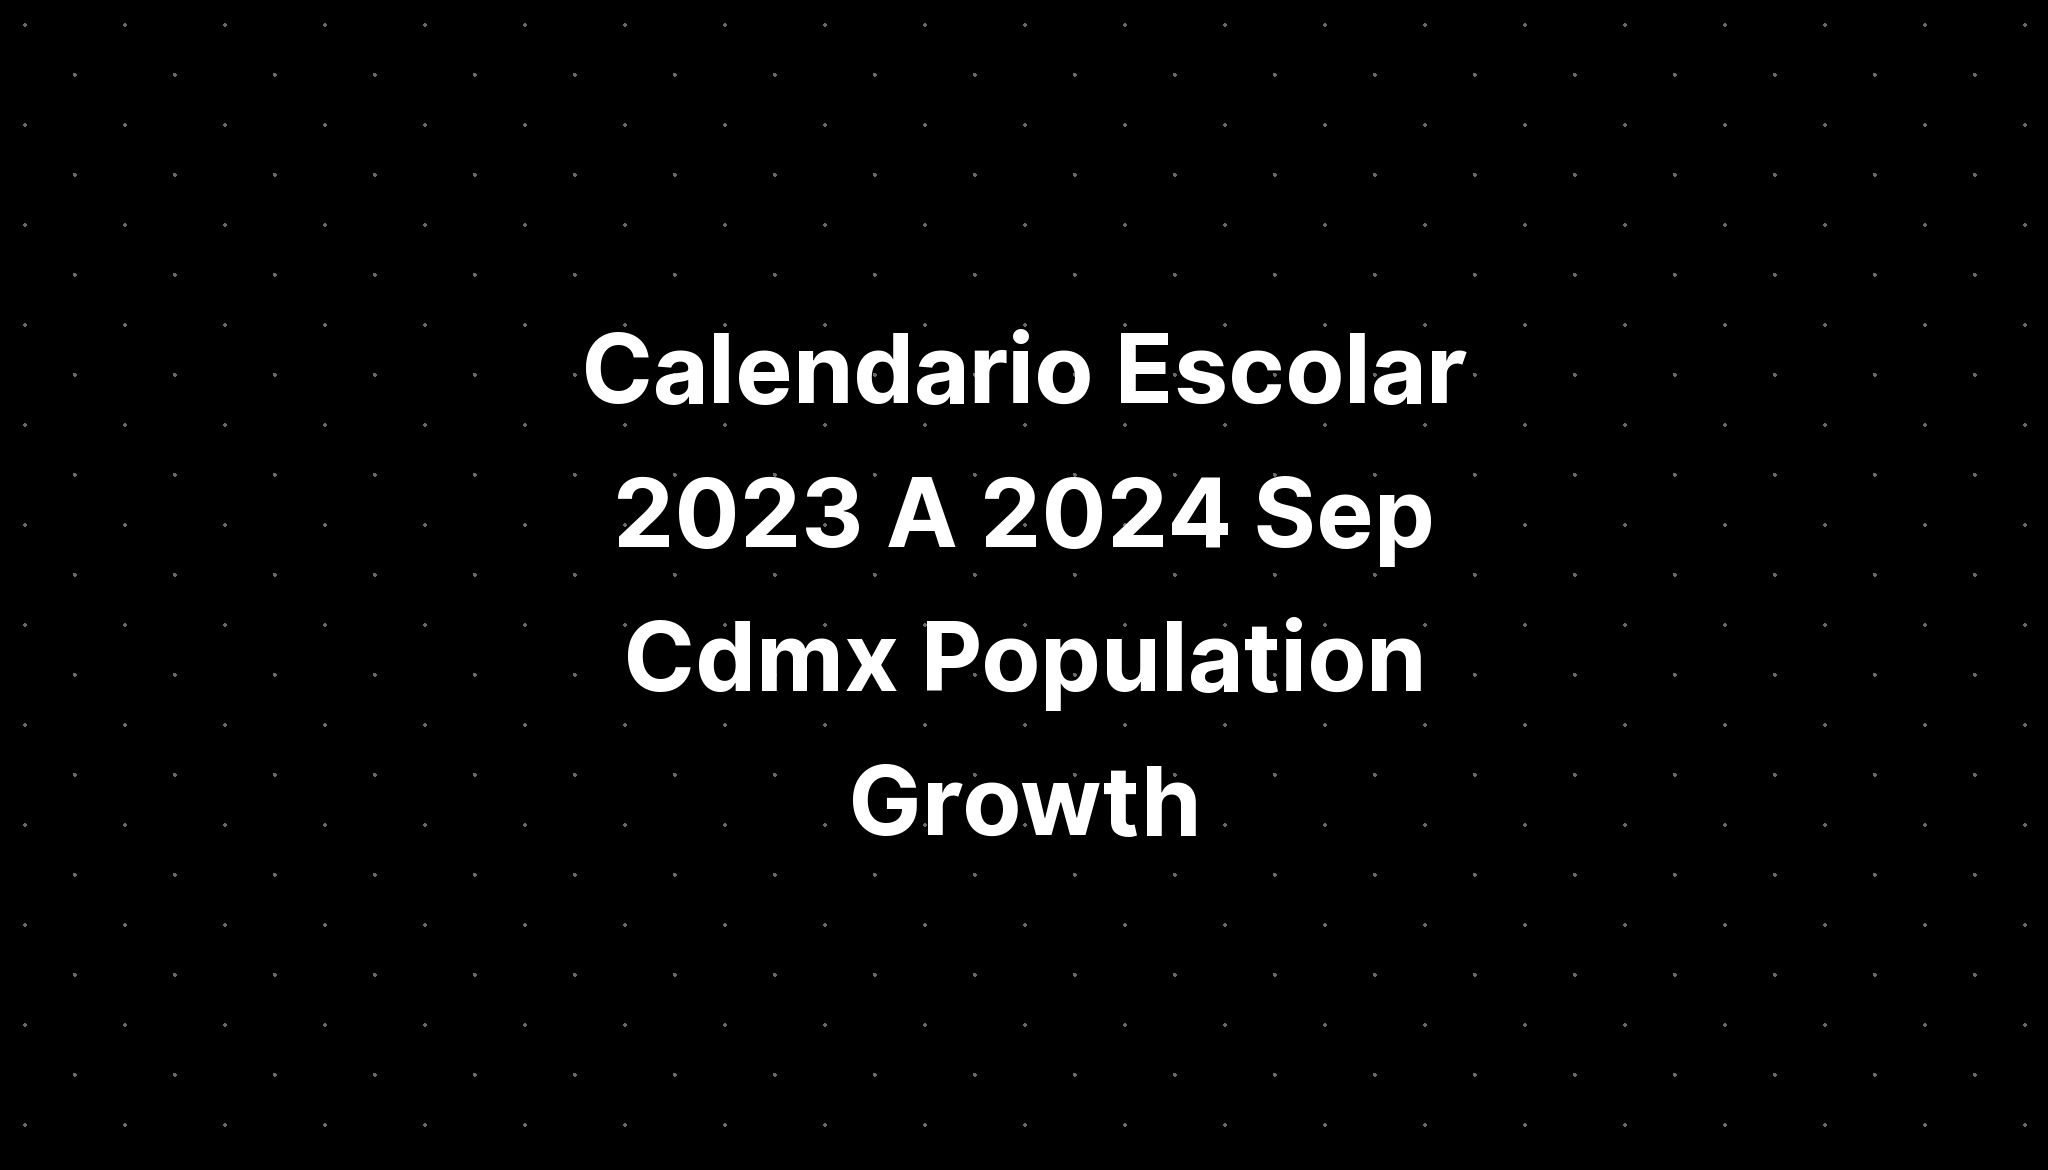 Calendario Escolar 2023 A 2024 Sep Cdmx Population Growth IMAGESEE